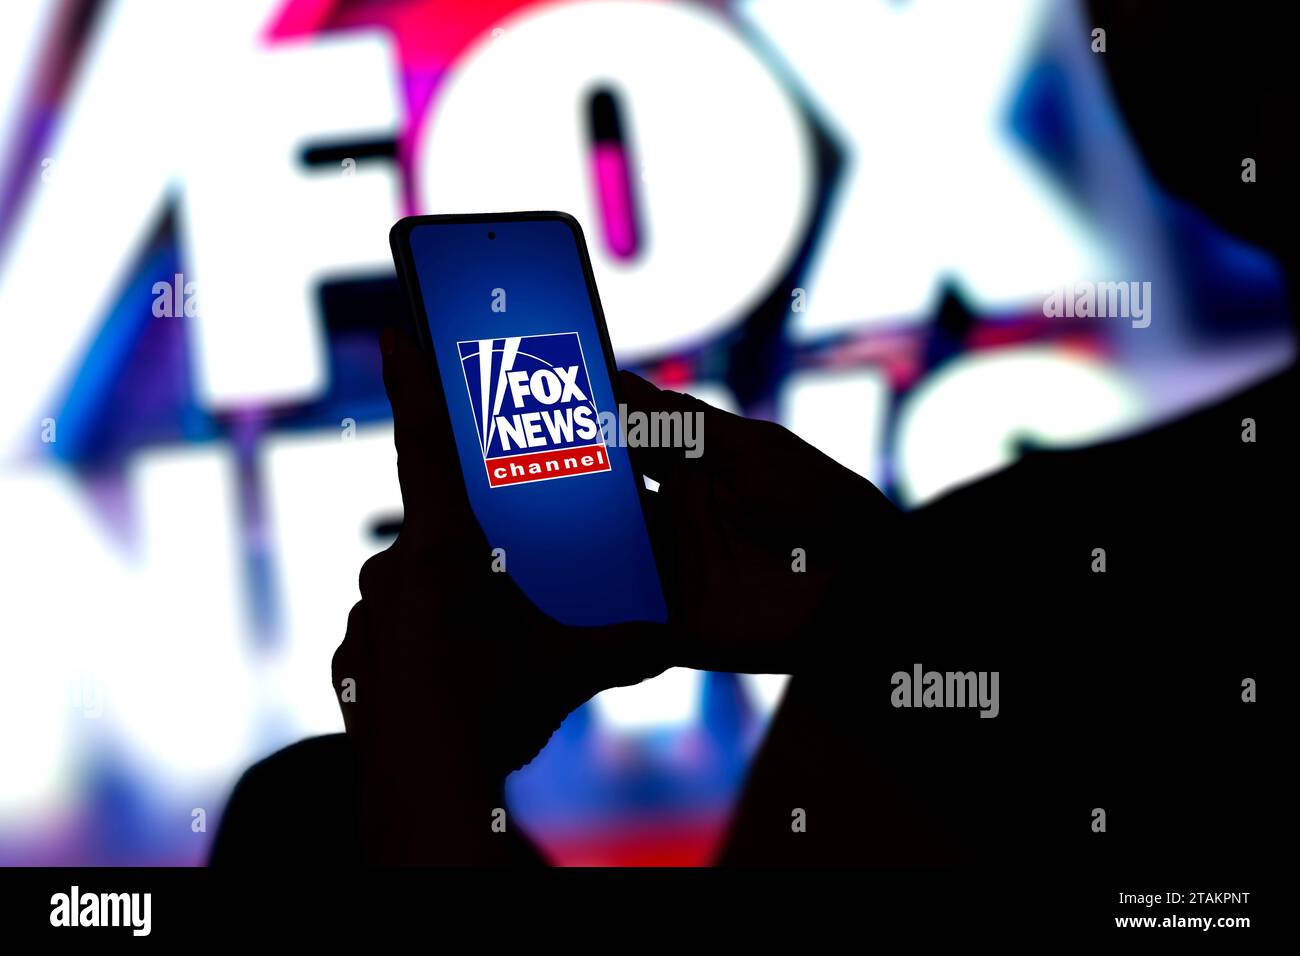 Logo de la chaîne Fox News sur l'écran du téléphone portable. Banque D'Images